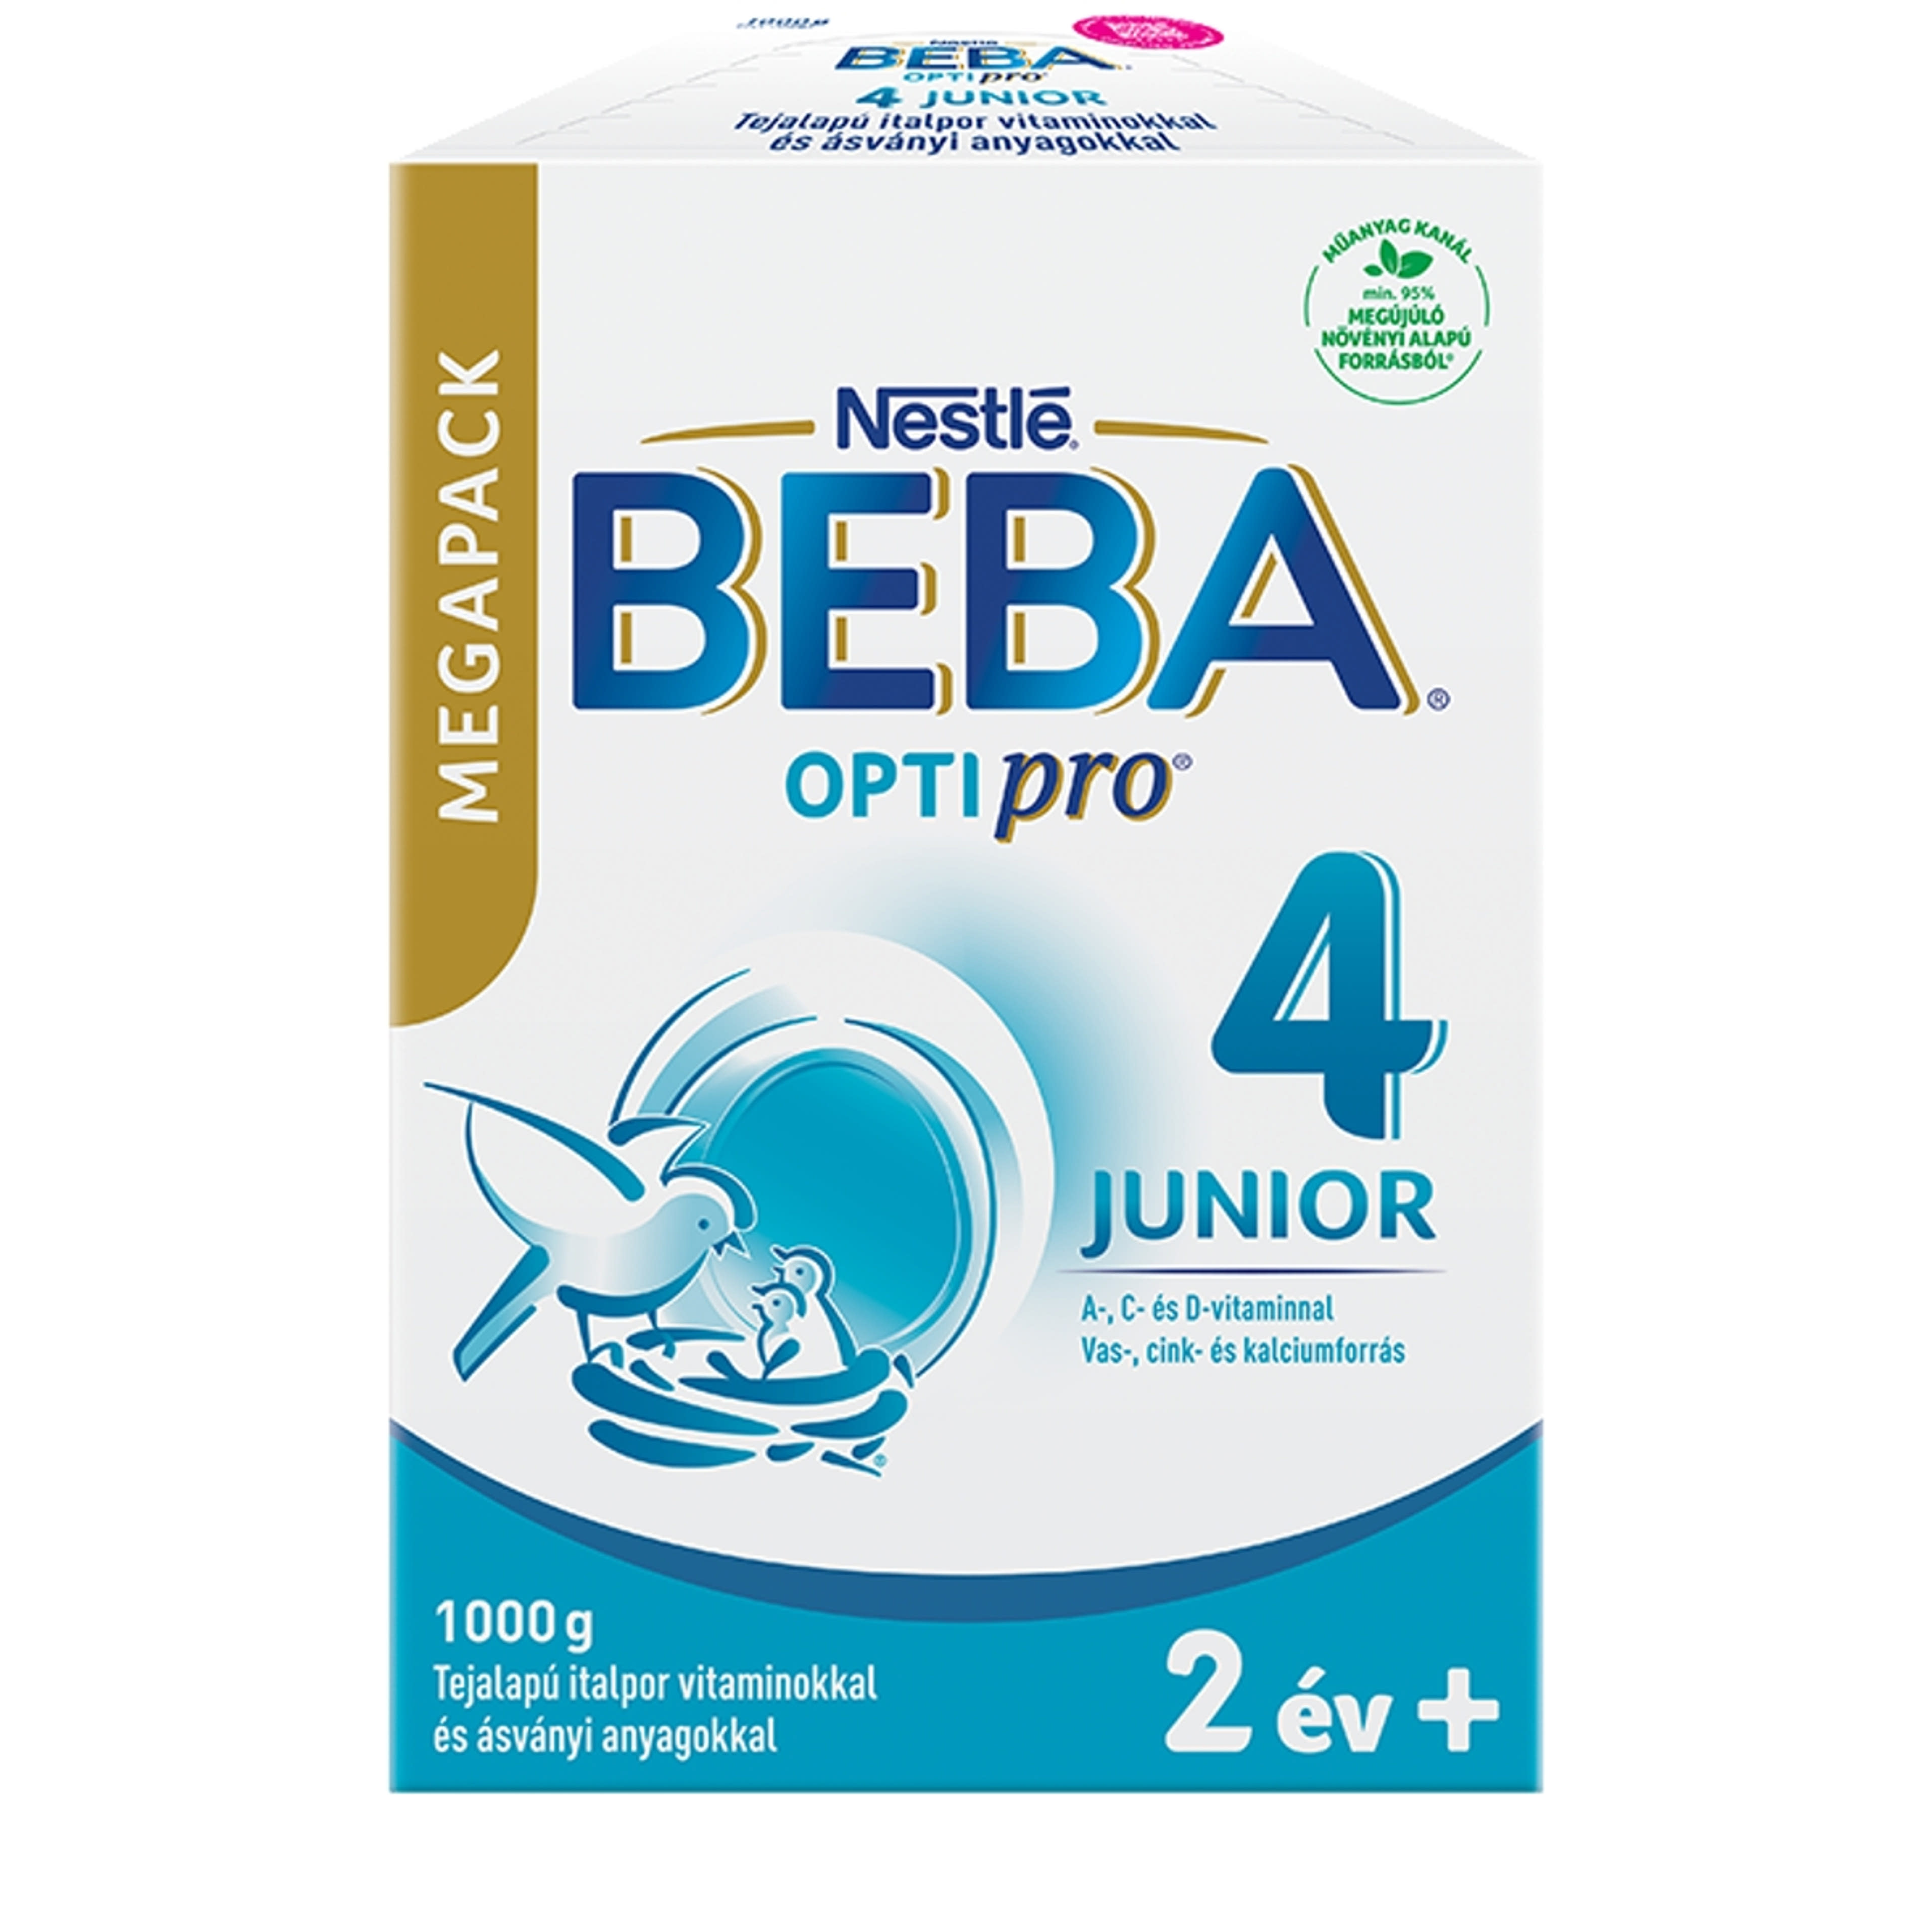 BEBA OPTIPRO Junior 4 italpor sovány tejjel 24 hónapos kortól MEGAPACK - 1000 g